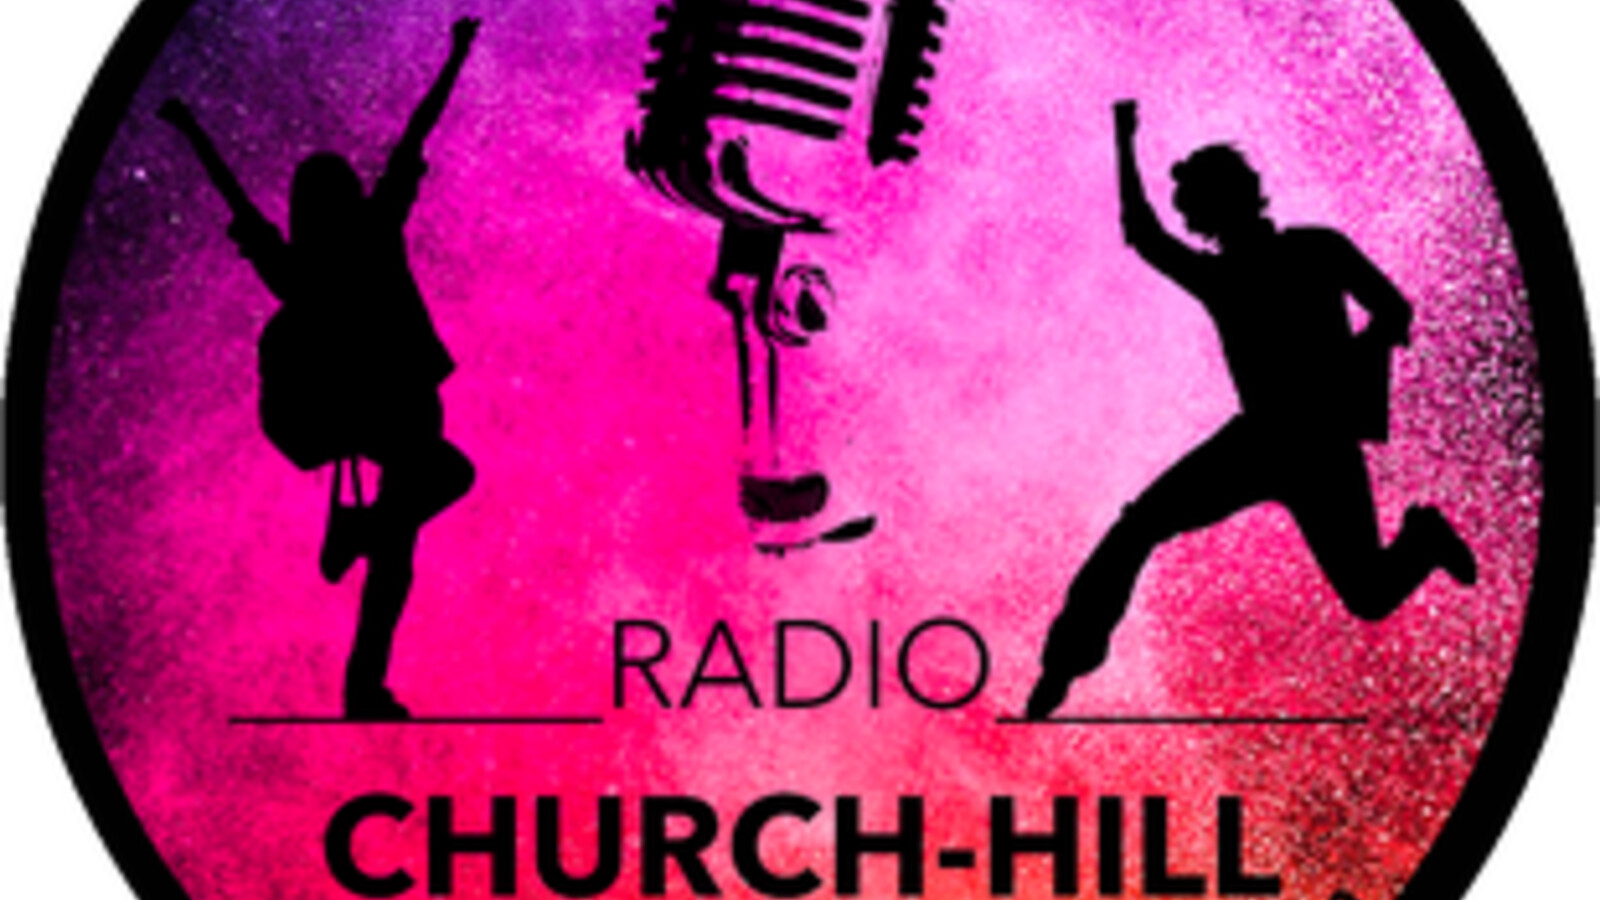 RADIO CHURCH-HILL hat Begeisterung ausgelöst - 1